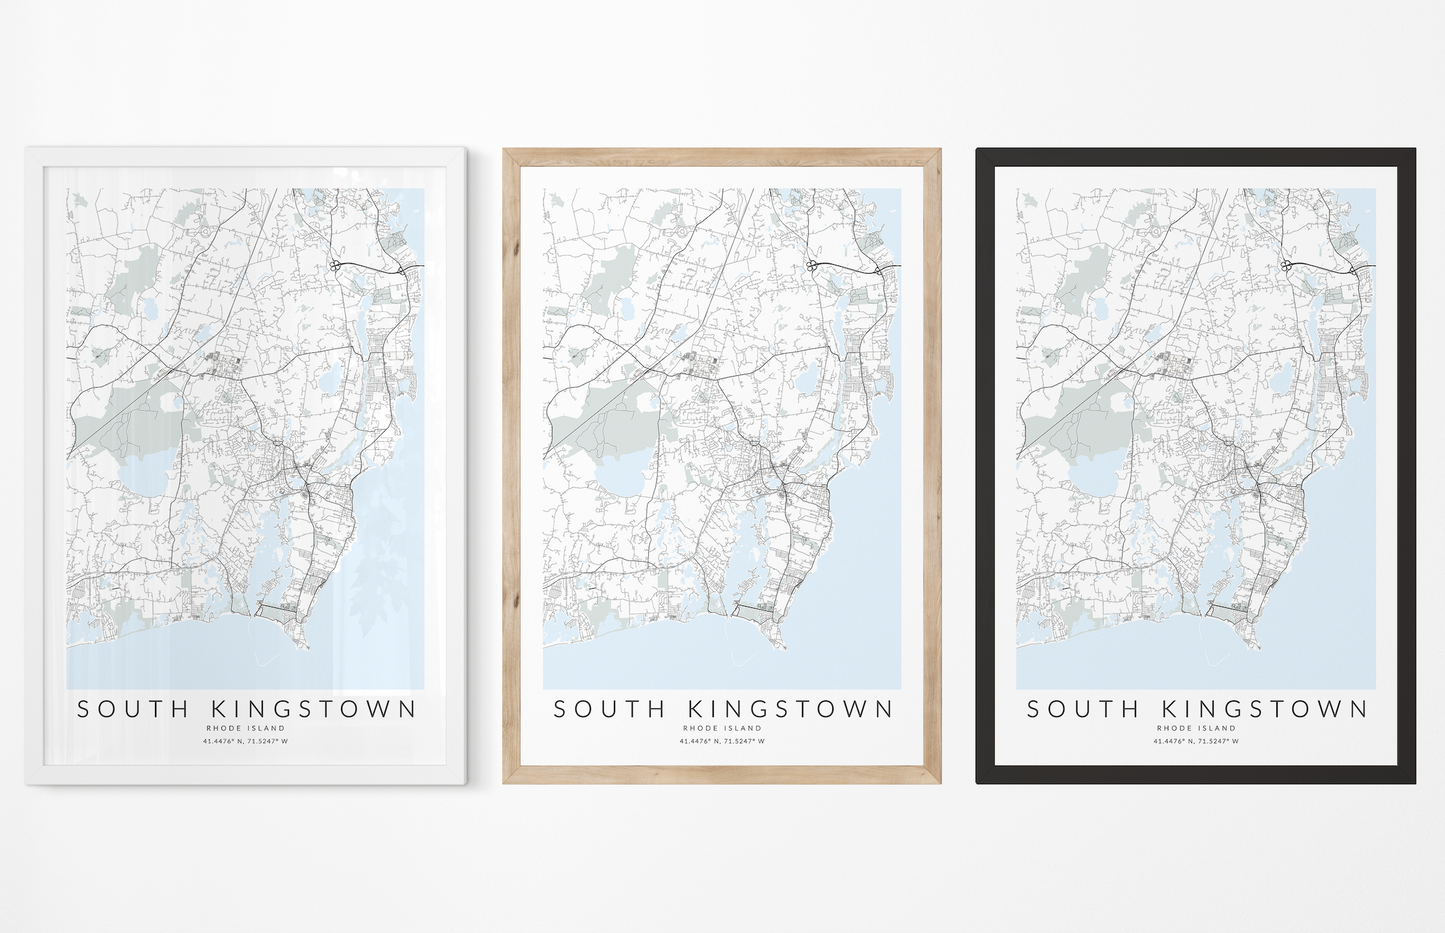 South Kingstown Map Print